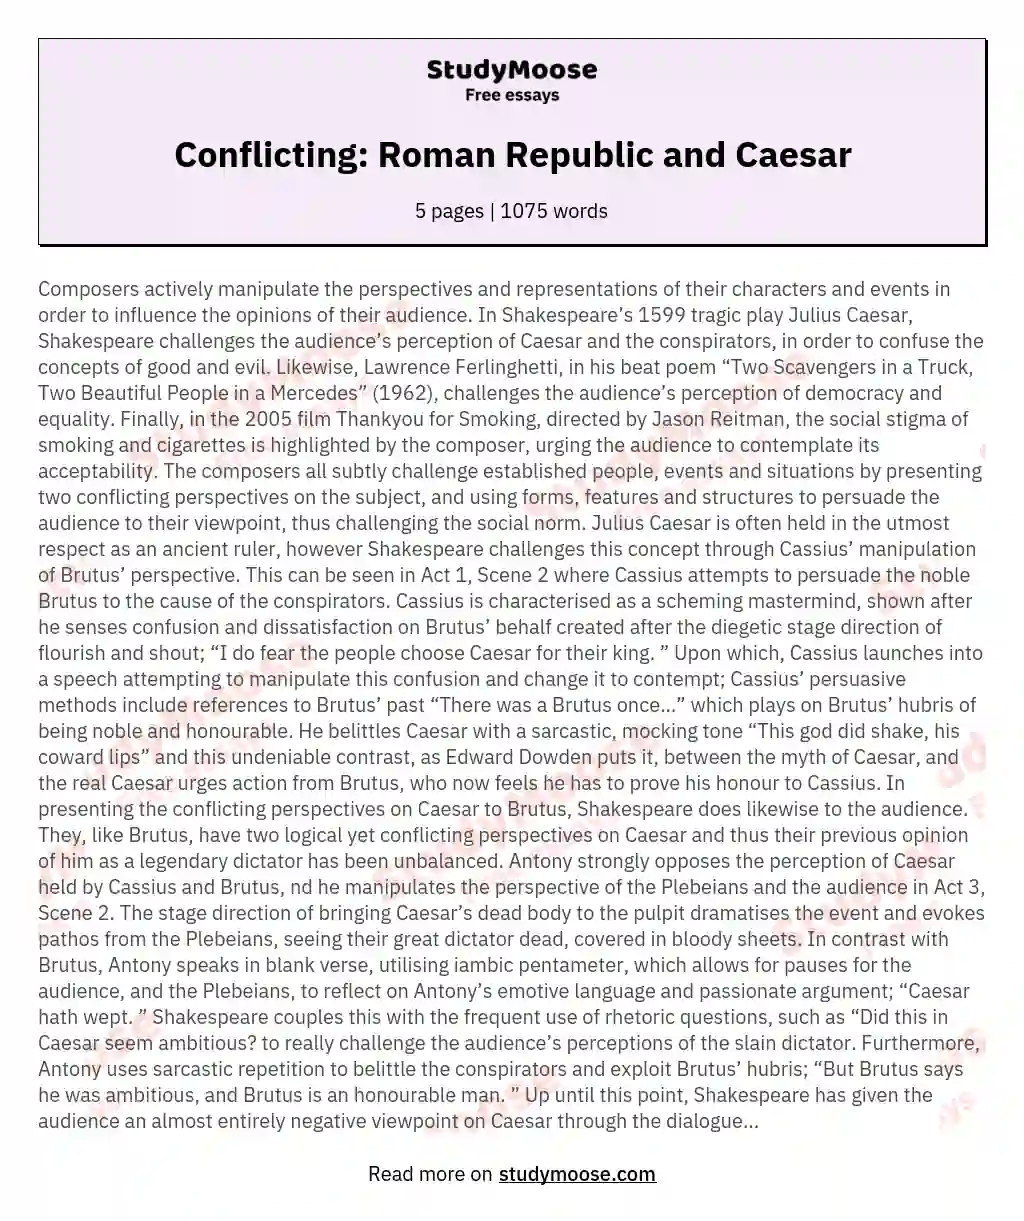 Conflicting: Roman Republic and Caesar essay